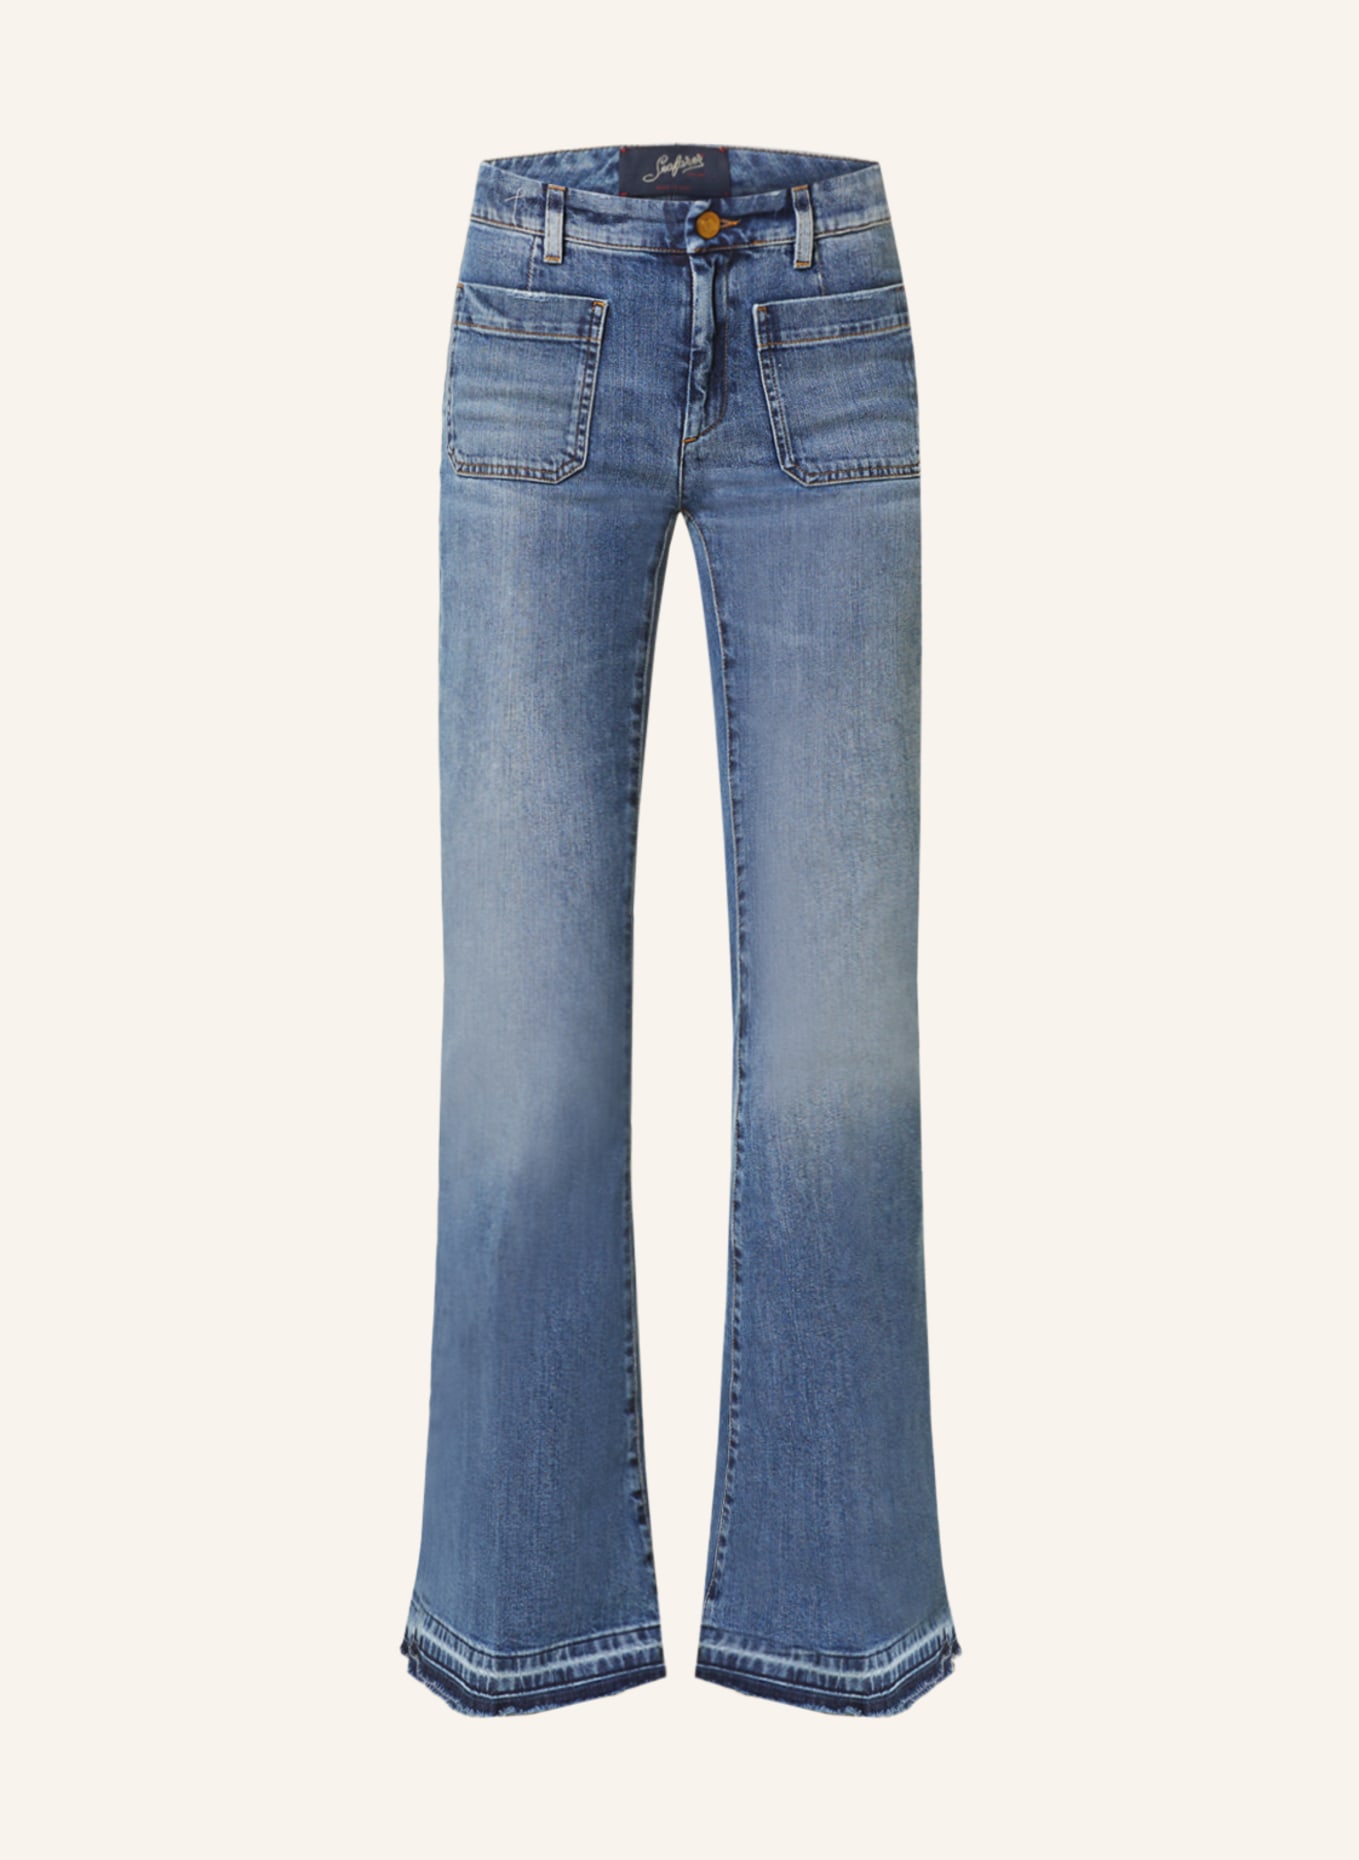 Seafarer Flared Jeans DELPHINE, Farbe: 5999 (Bild 1)